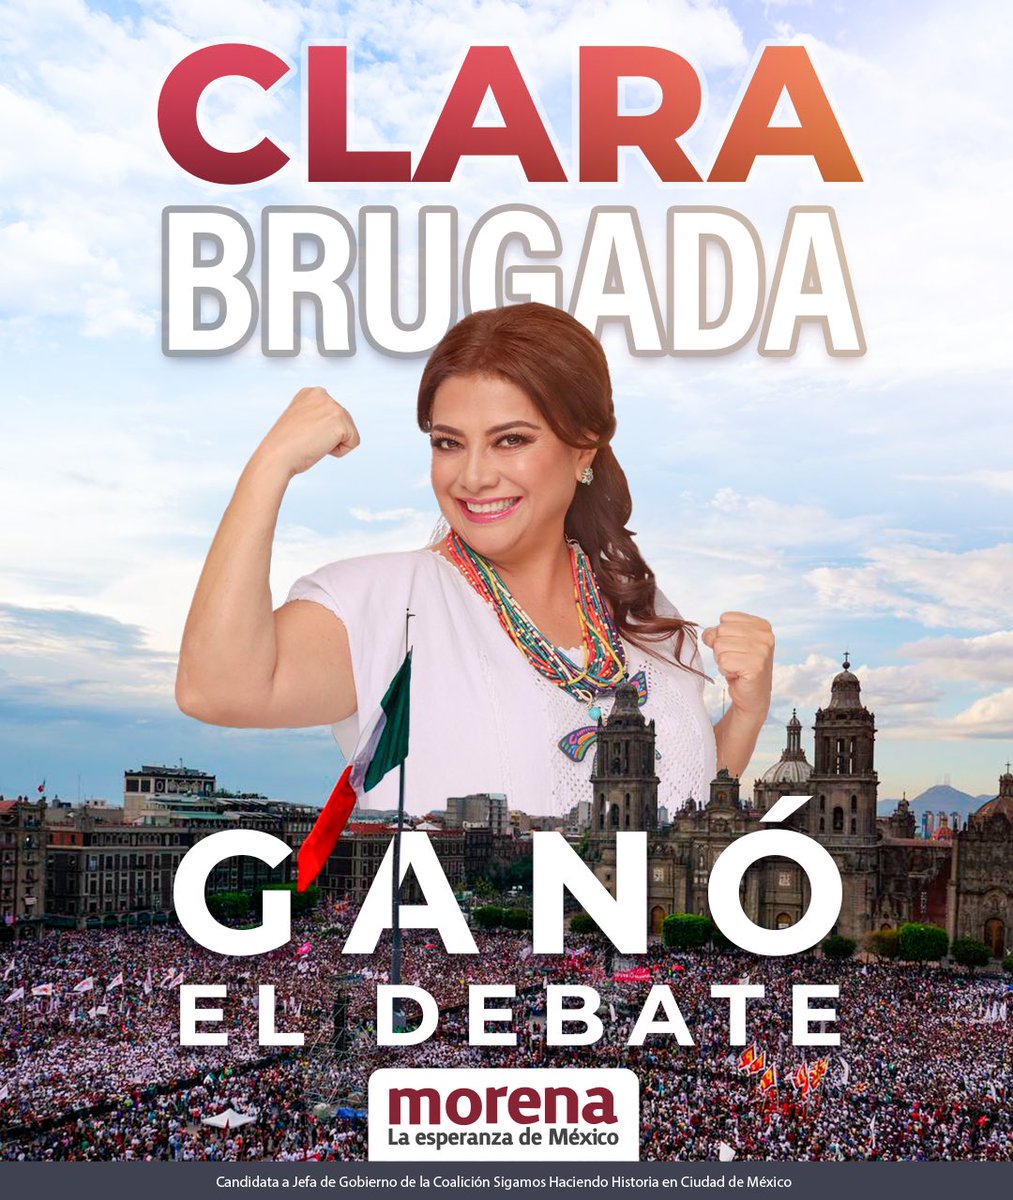 ¡Imbatible! Nuestra candidata @ClaraBrugadaM ganó el debate y este 2 de junio arrasará en las urnas. Tendremos utopías en todas las alcaldías. #GanamosConClara.